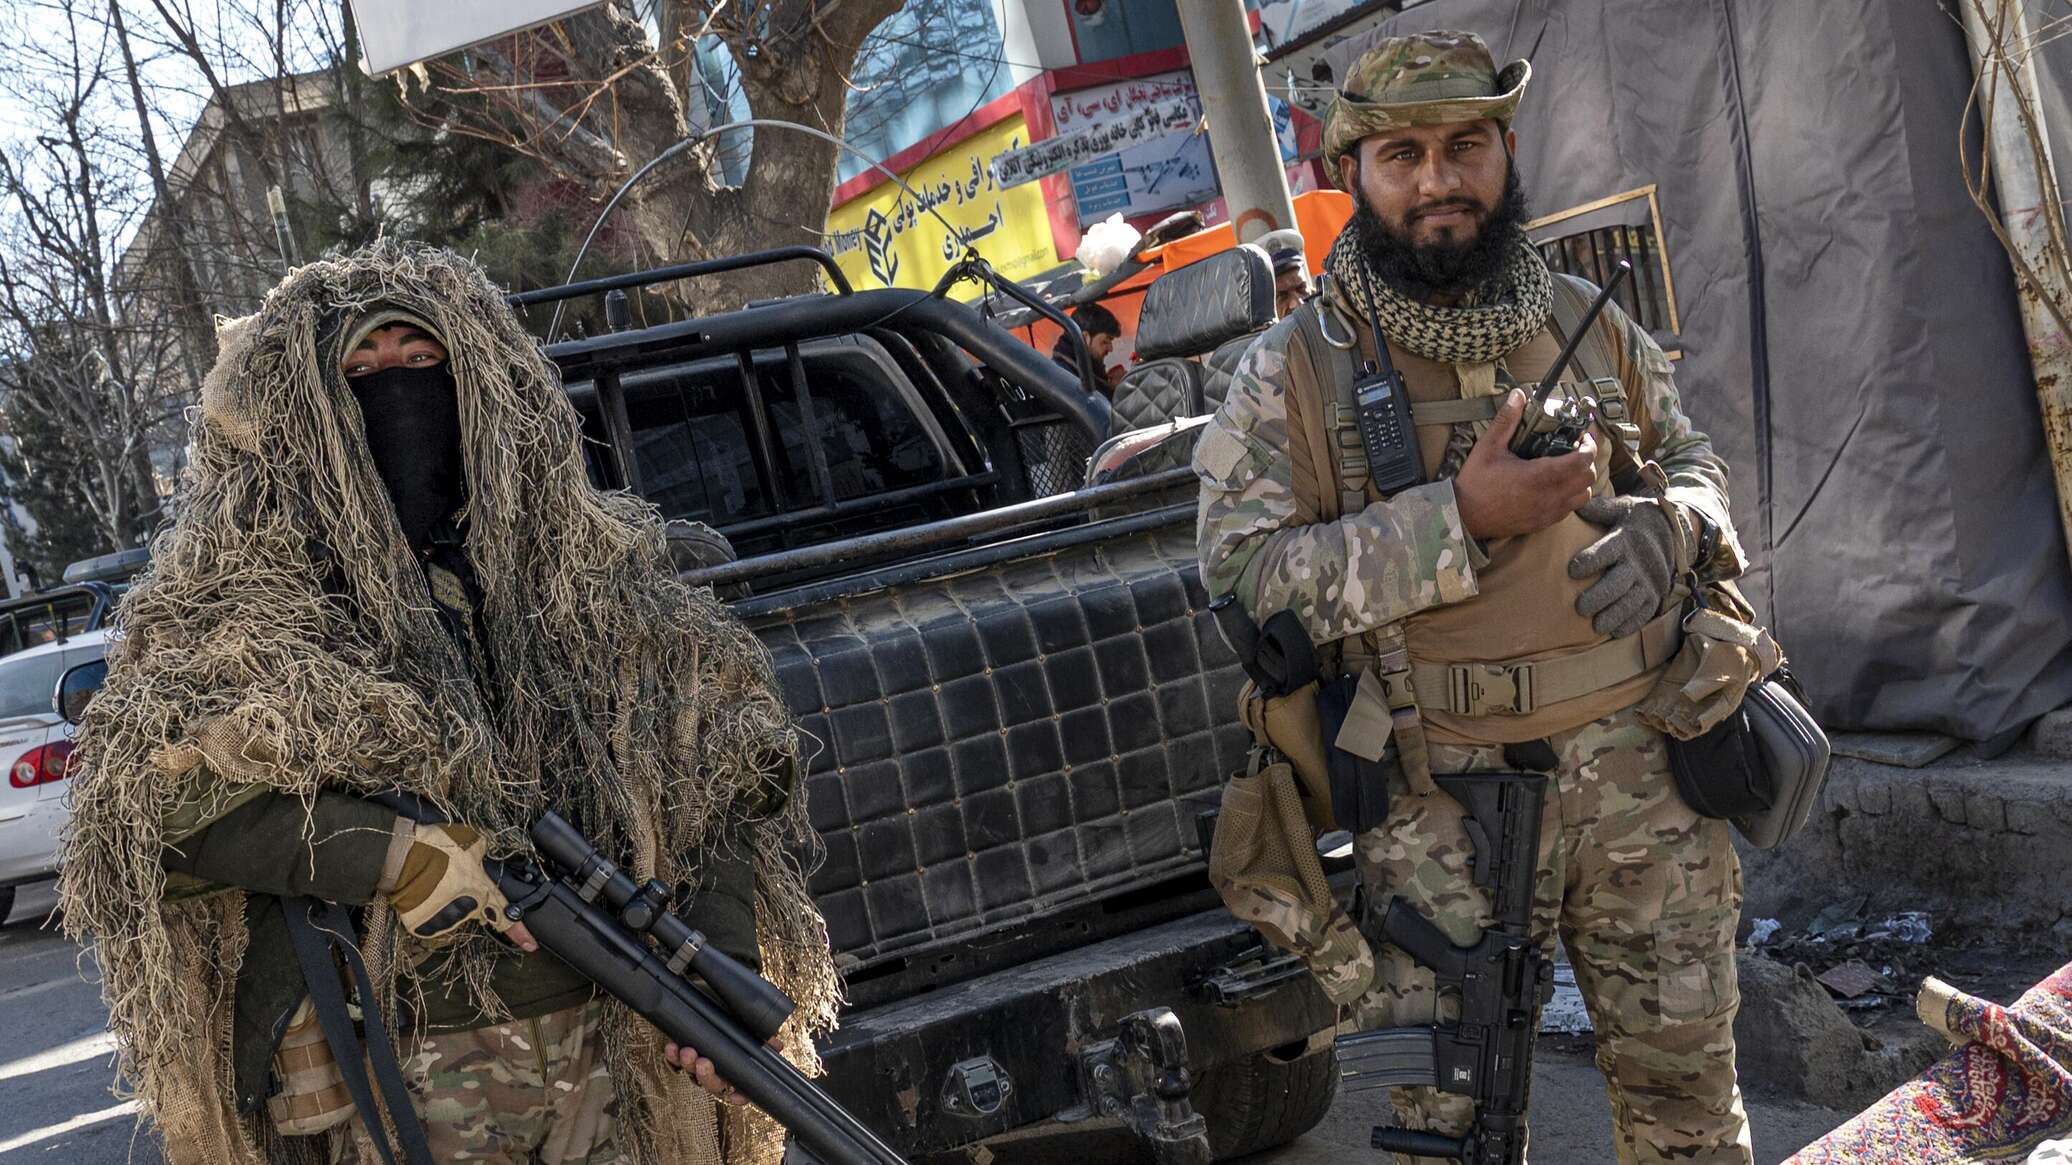 الكرملين يعلق على فكرة رفع حركة "طالبان" من قائمة المنظمات الإرهابية في روسيا